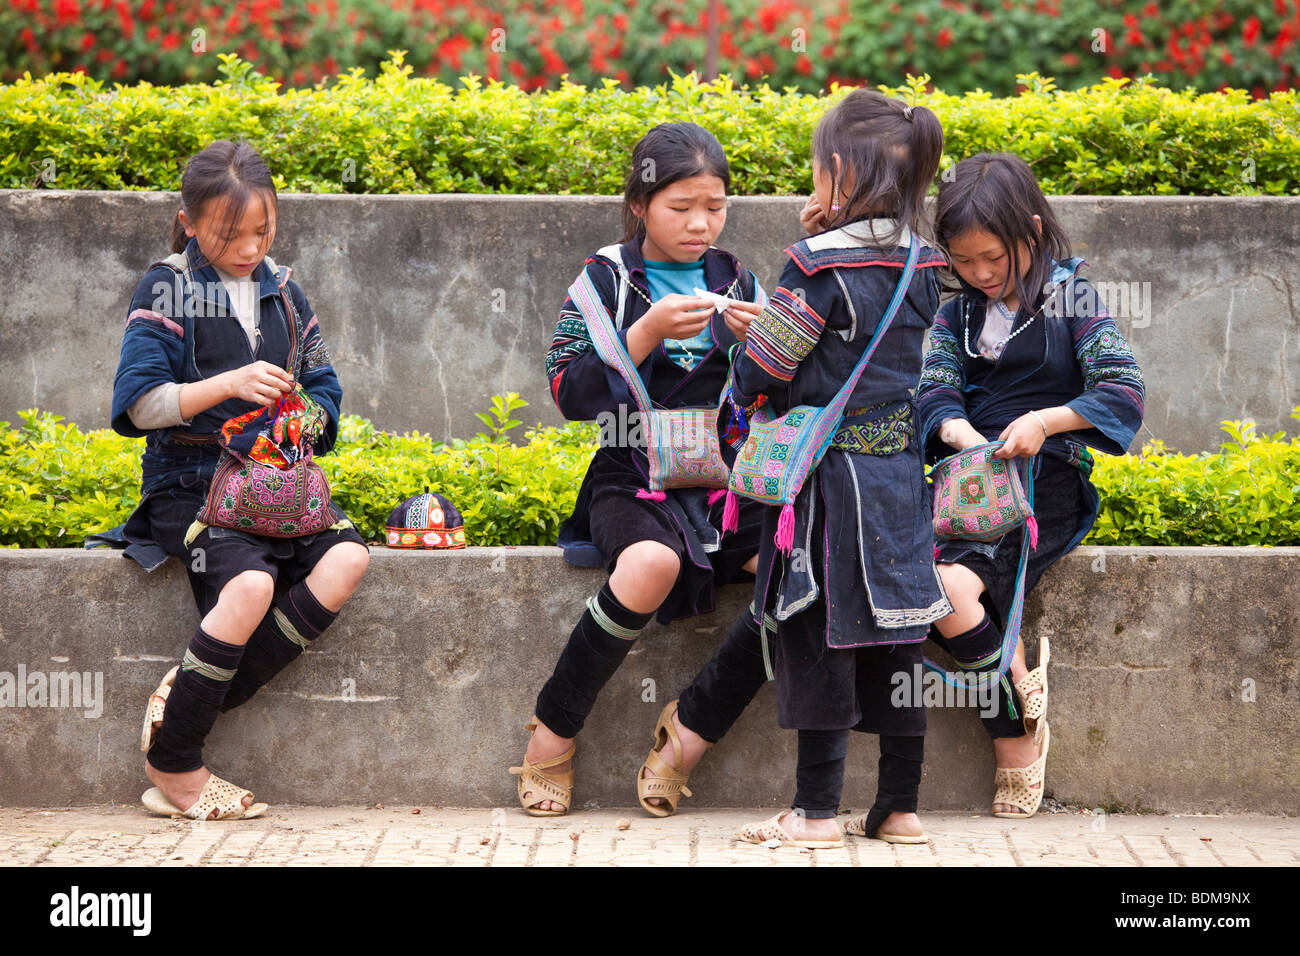 Fille Hmong Noire Heureuse Banque De Photographies Et Dimages Haute R Solution Alamy